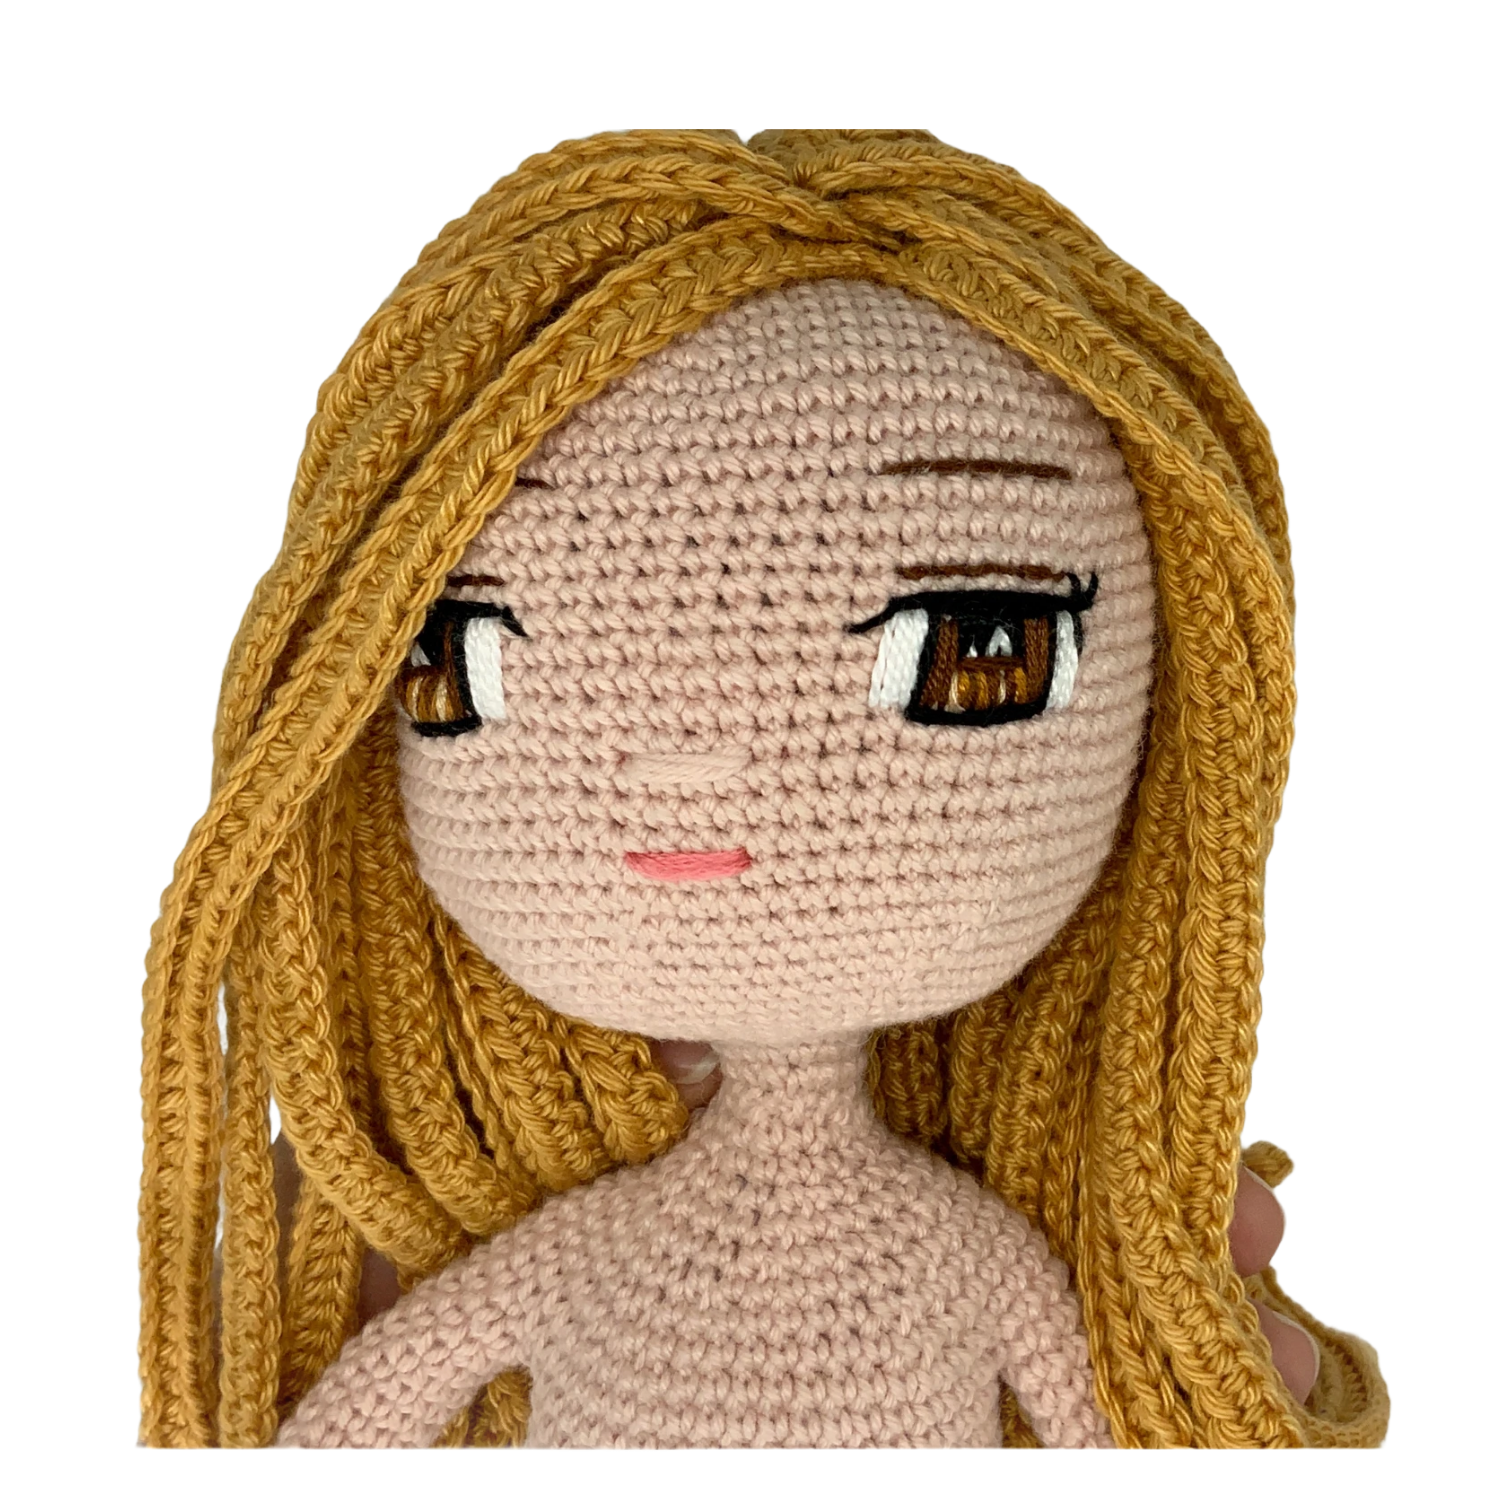 Crochet Doll Pattern for Eyes, Amigurumi Doll Pattern for Eyes, Embroidery  Eyes for Amigurumi Doll Tutorial, Amigurumi Eyes, English Pdf 